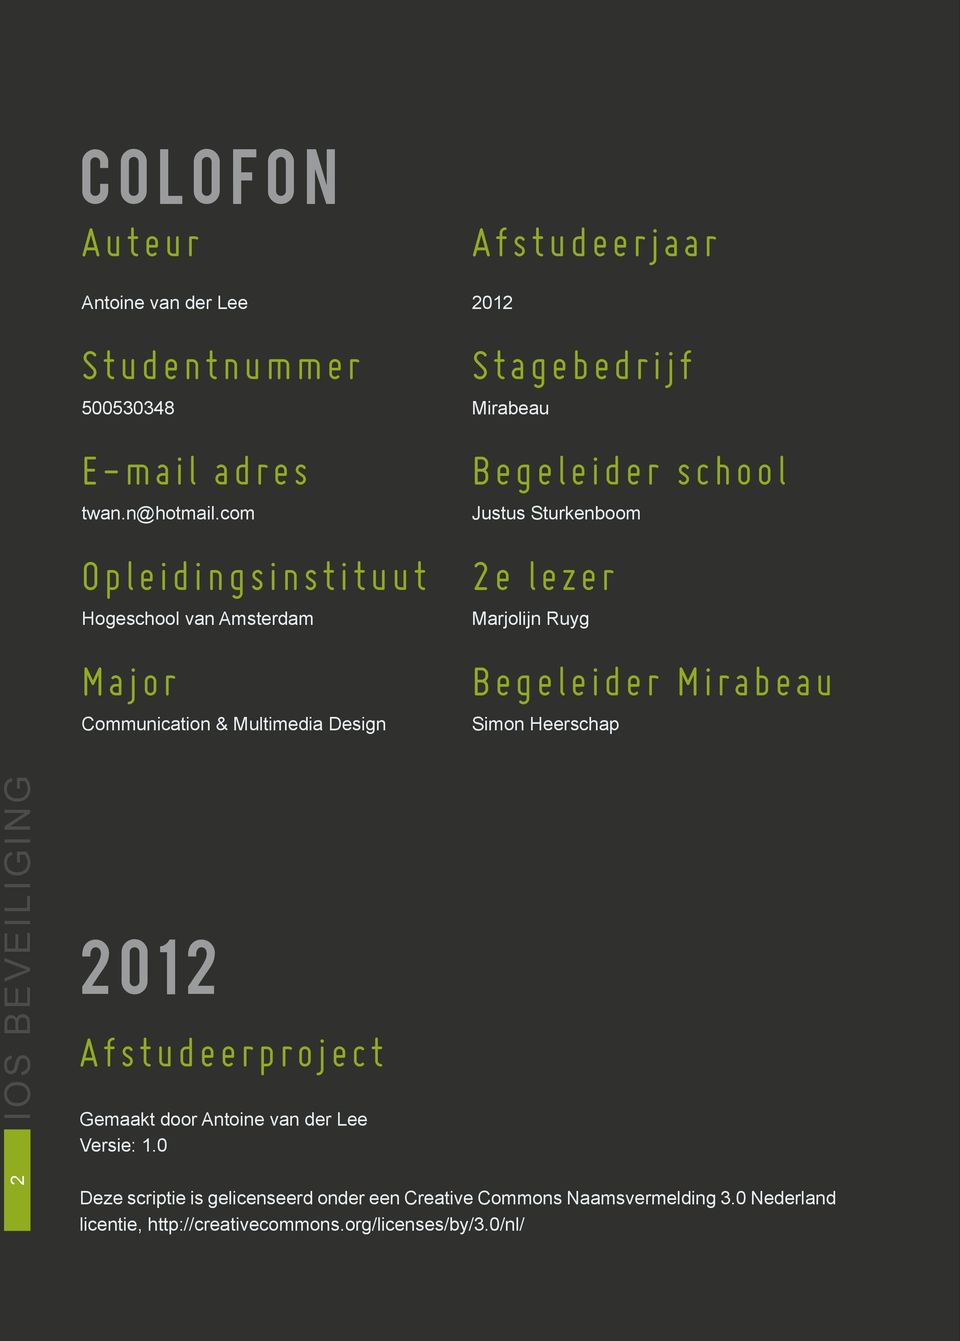 Begeleider school Justus Sturkenboom 2e lezer Marjolijn Ruyg Begeleider Mirabeau Simon Heerschap 2 IOS BEVEILIGING 2012